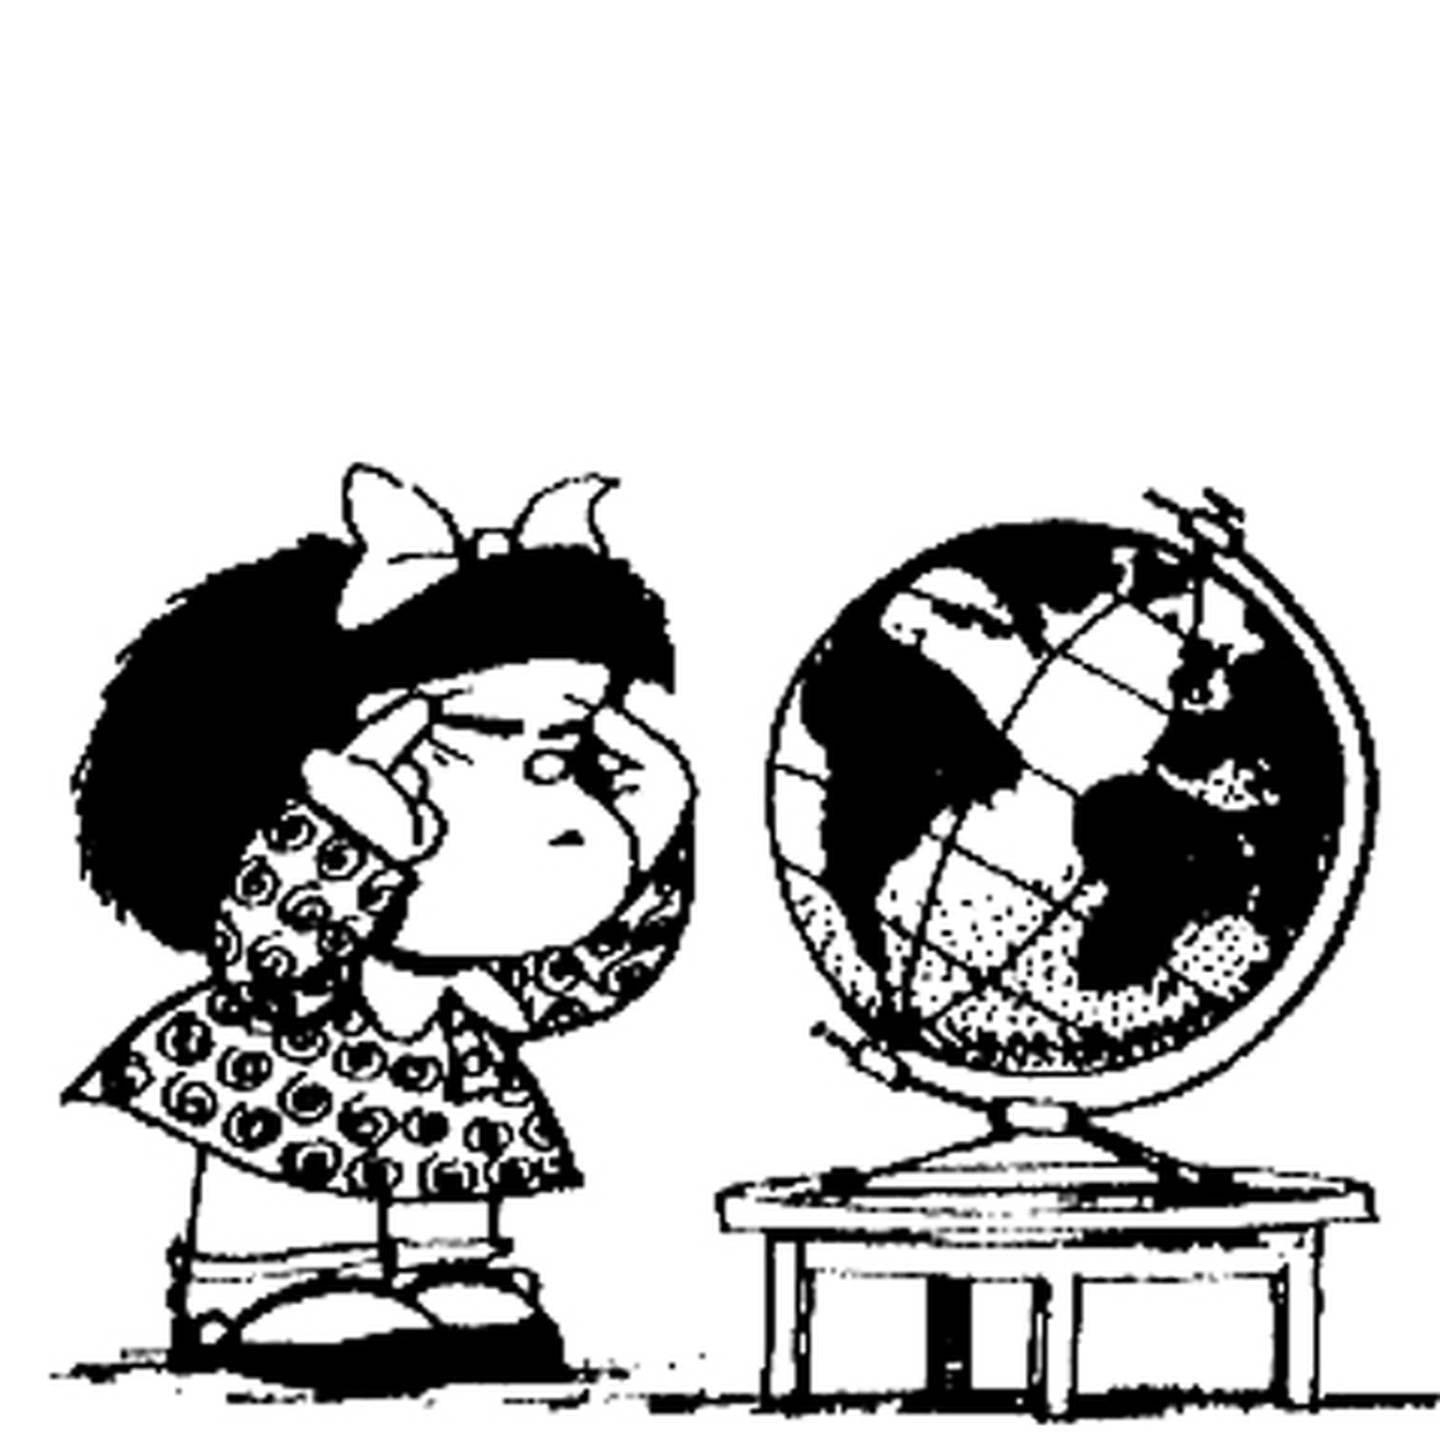 Diez frases inolvidables de Mafalda | La Nación